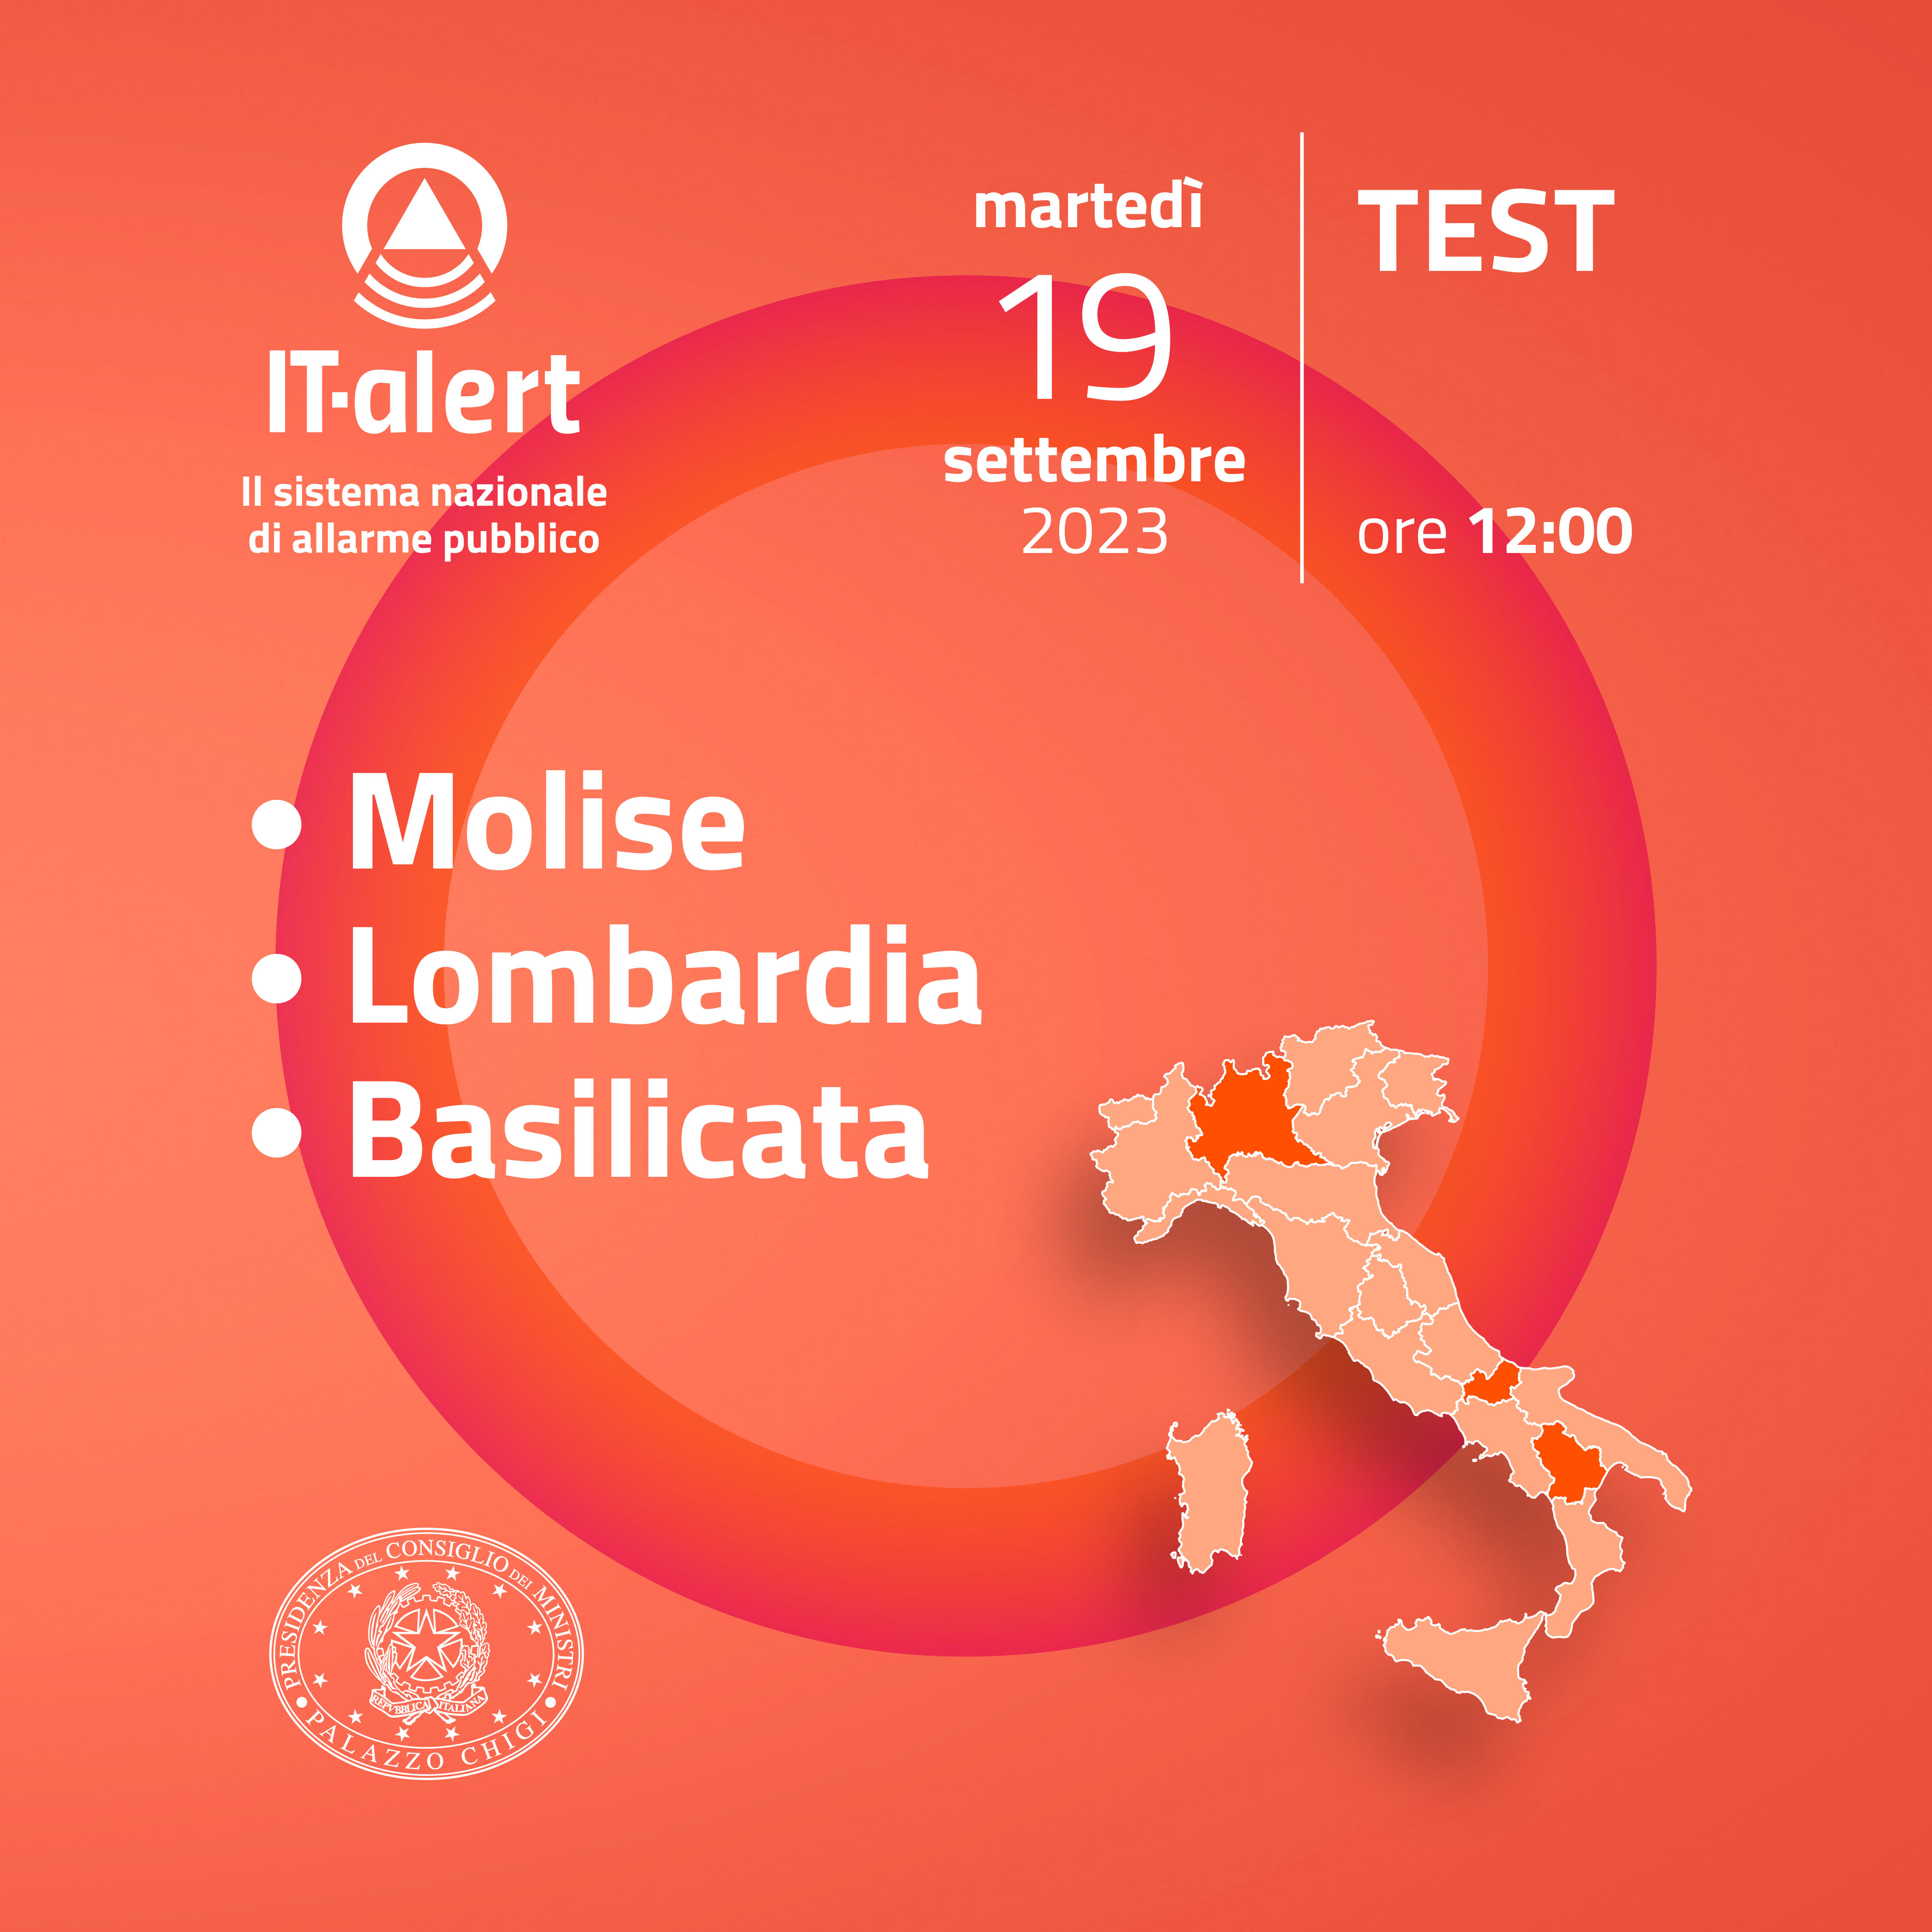 IT-ALERT: martedì 19 settembre è in programma in tutta la Lombardia il test del nuovo servizio di Protezione Civile